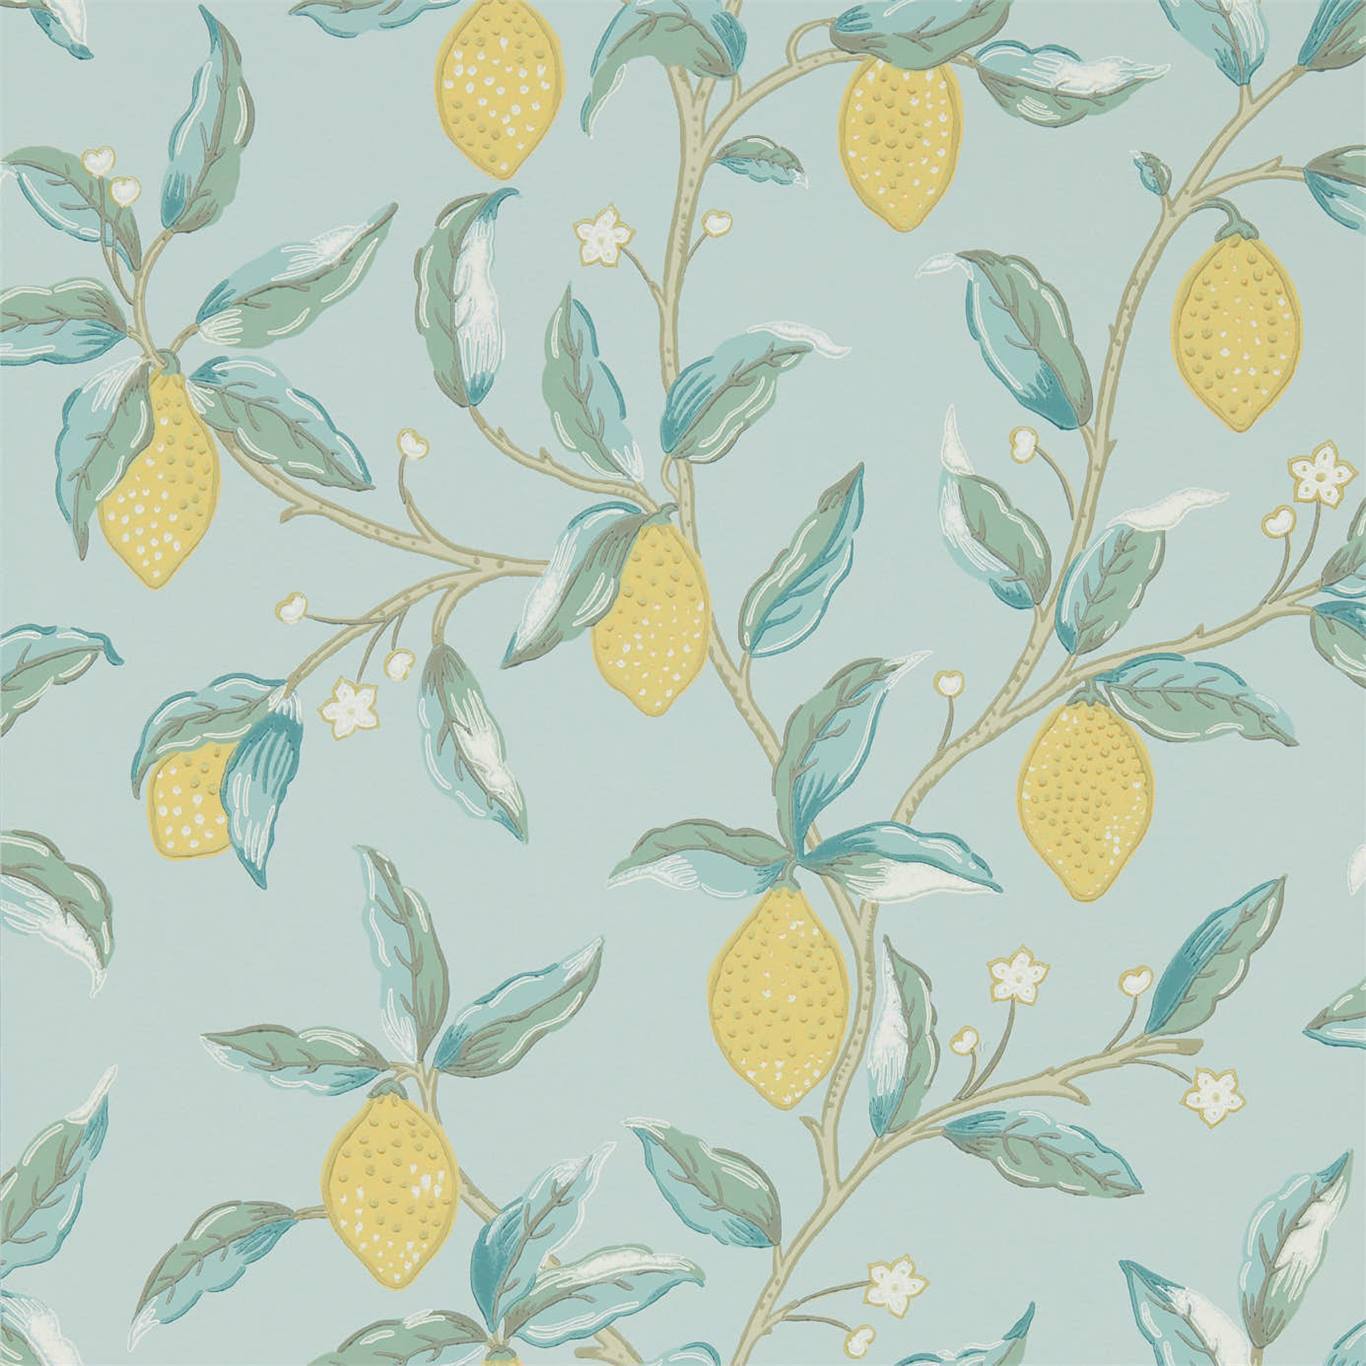 Lemon Tree Wallpaper DMSW216674 by Morris & Co